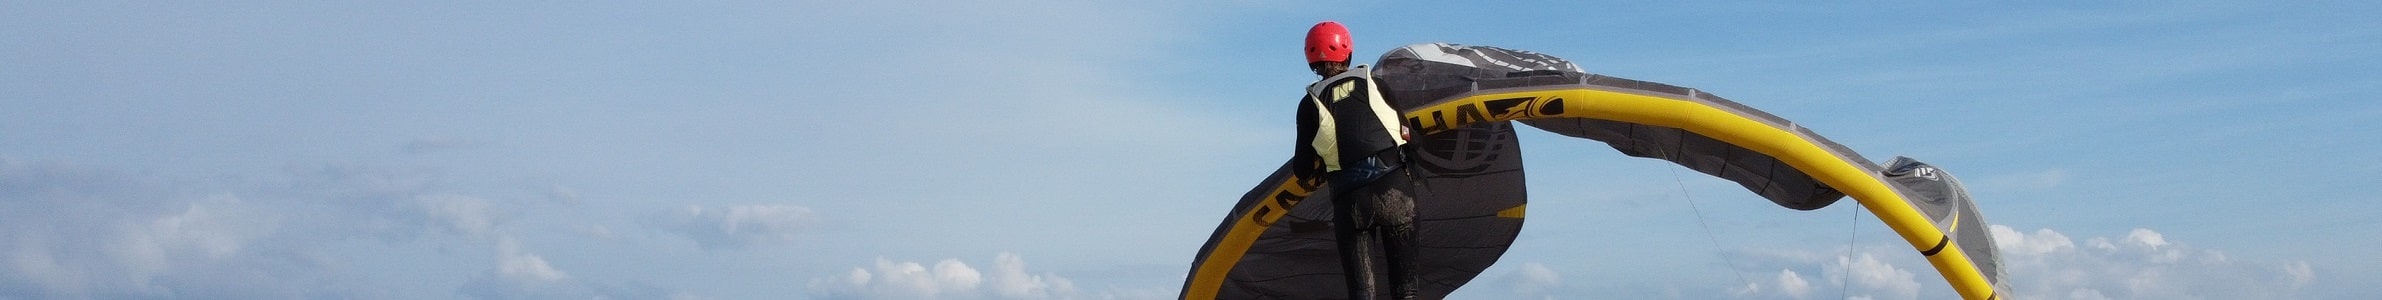 Kitesurfles.nl  Veilig leren kitesurfen met IKO-gecertificeerde instructeurs. Kitesurfles Scheveningen - Kitesurfen cursus